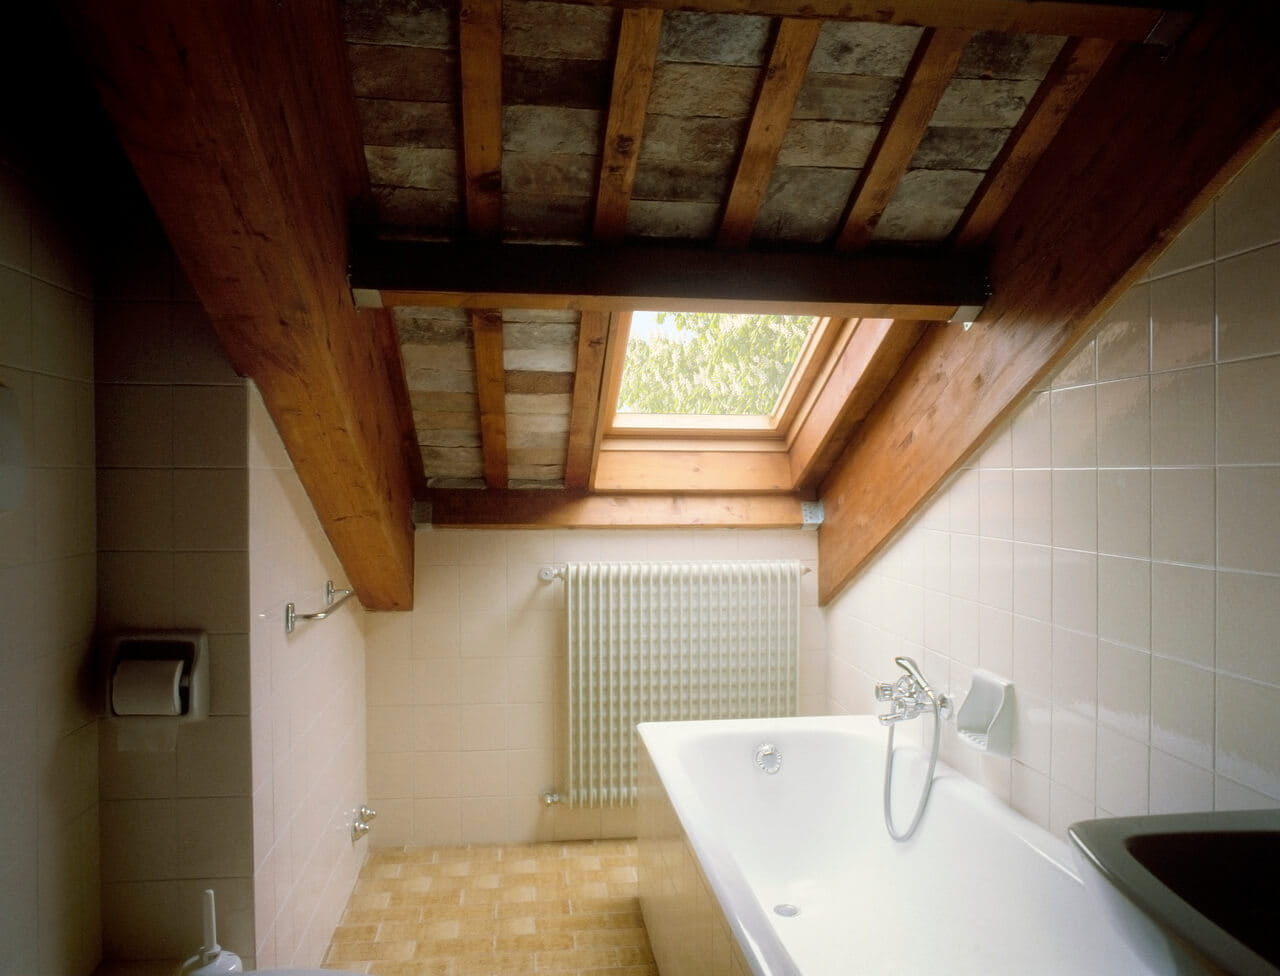 Rustisches Badezimmer mit freiliegenden Balken und einem VELUX Dachflächenfenster, das für natürliches Licht sorgt.